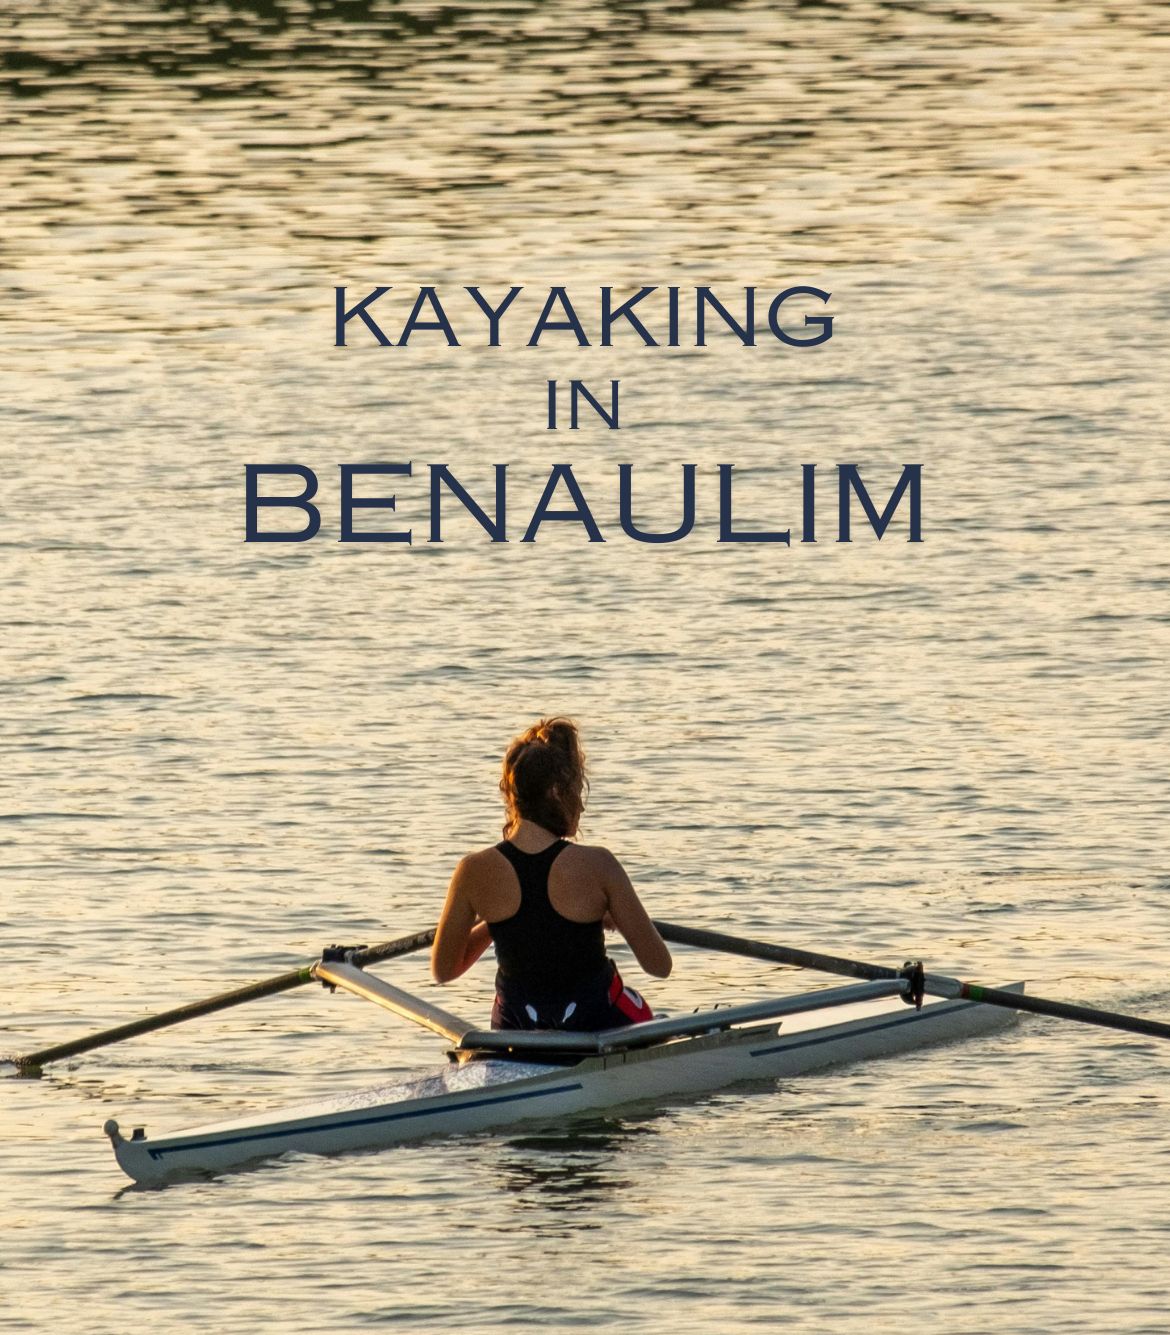 Kayaking in Benaulim